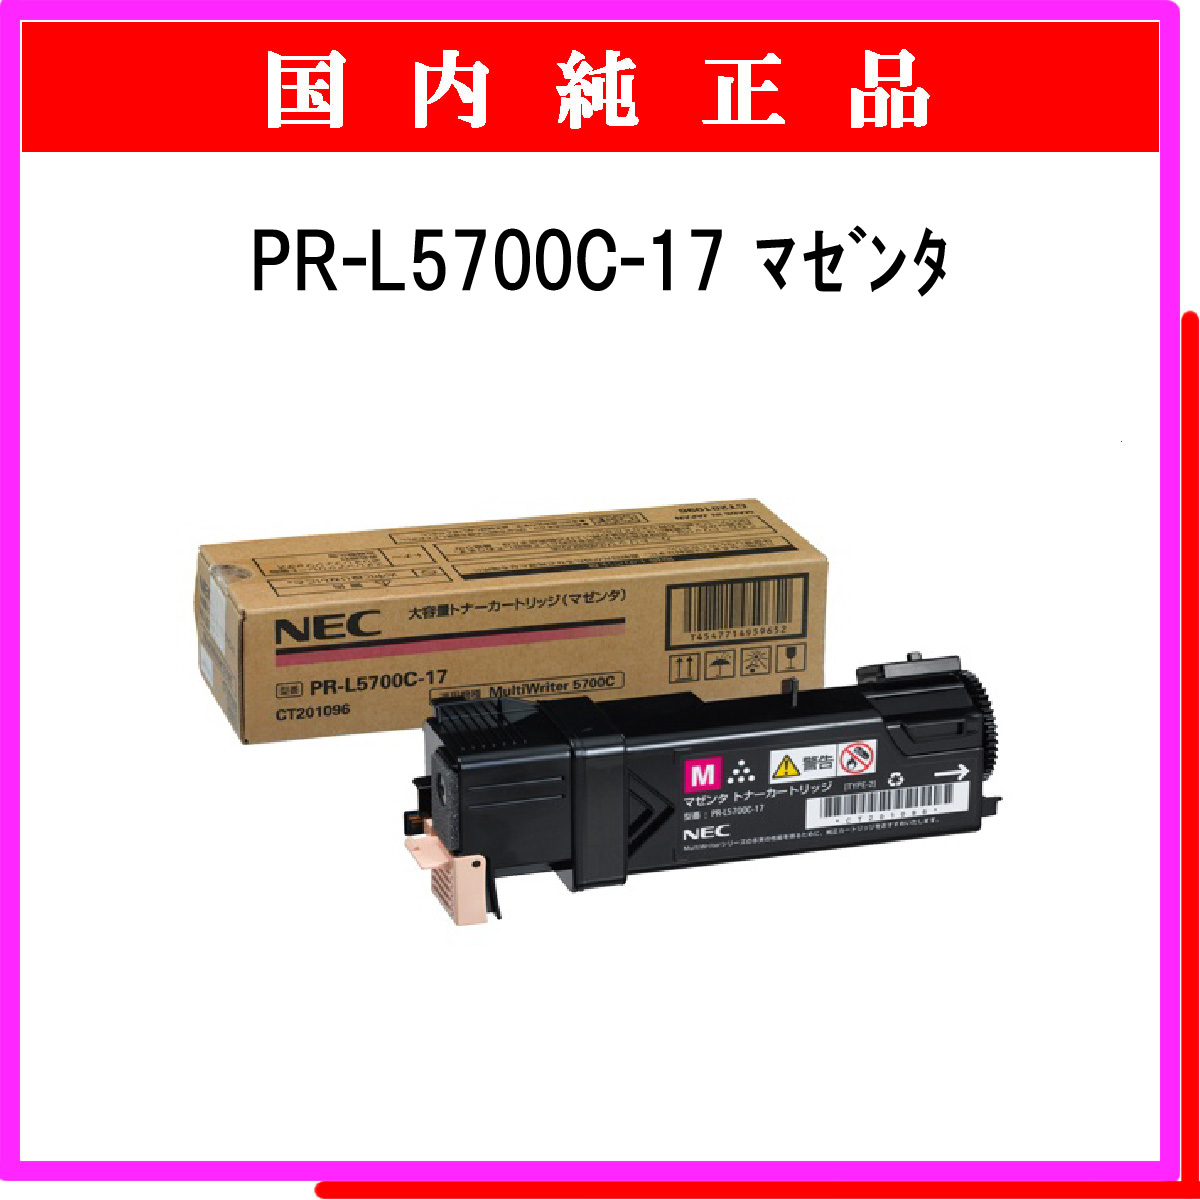 PR-L5700C-17 (大容量) 純正